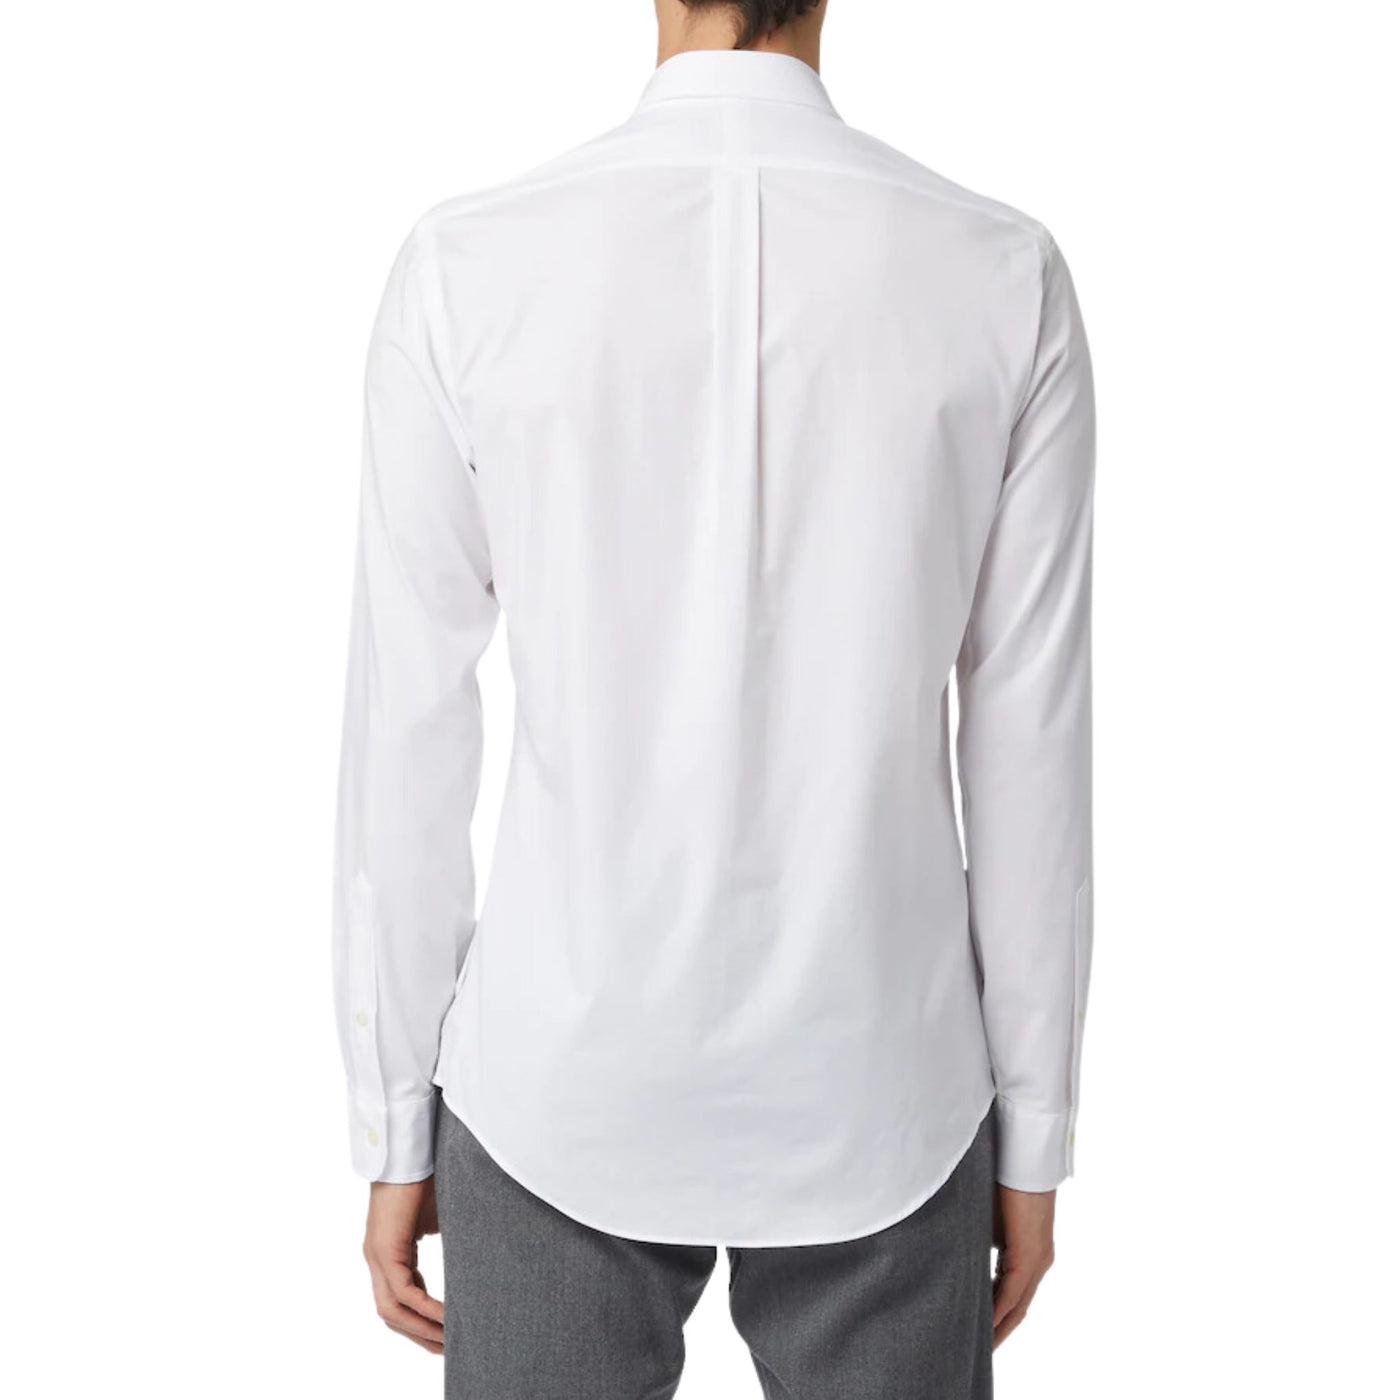 Immagine retro della camicia bianca da uomo firmata Ralph Lauren,manica lunga,polsini con bottoni.